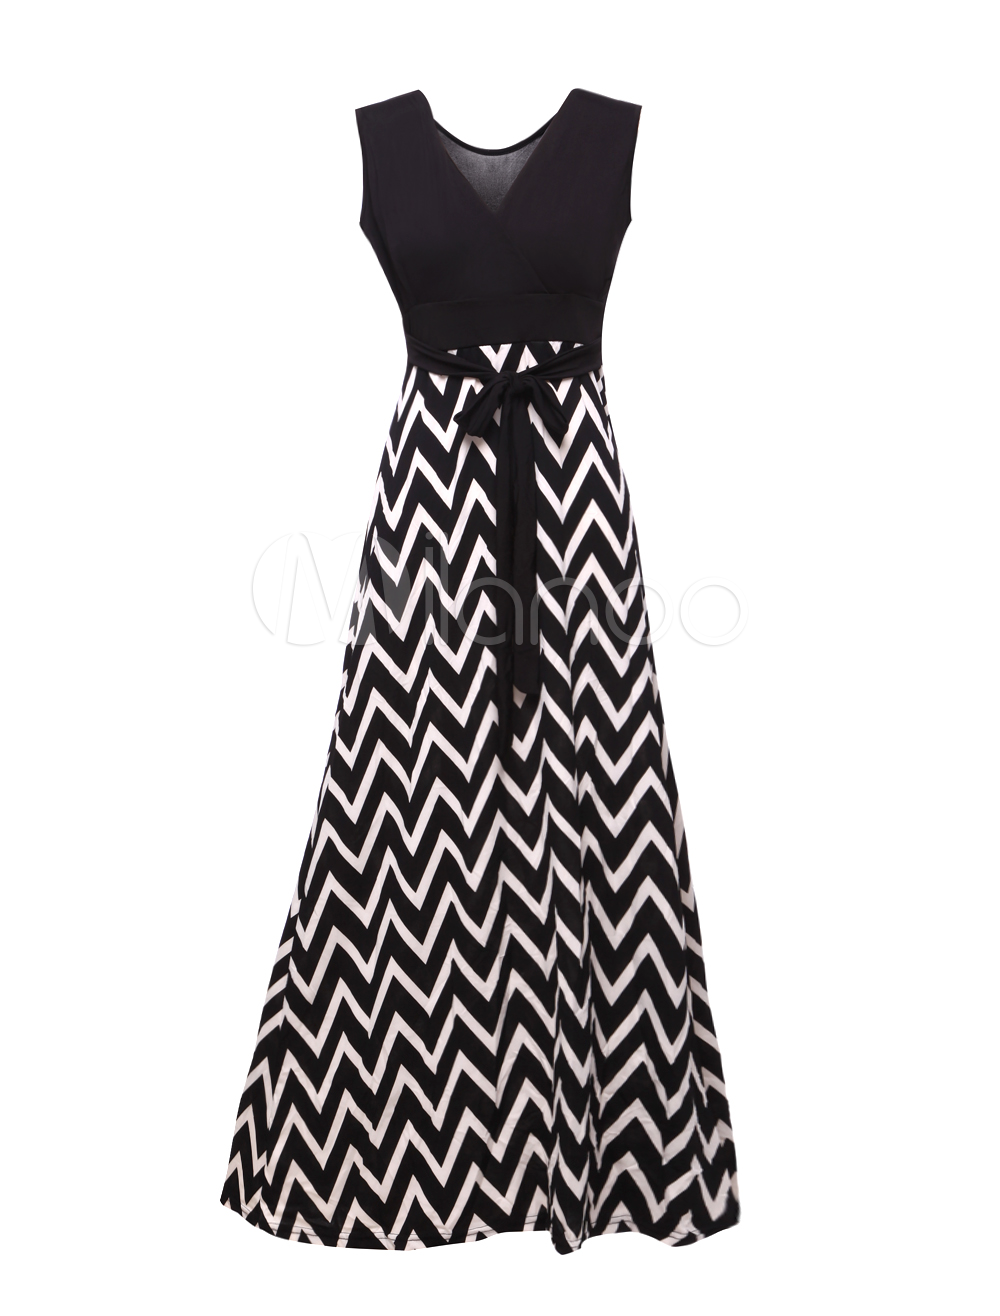 Attractive Black V-Neck Zigzag Pattern Maxi Dress - Milanoo.com